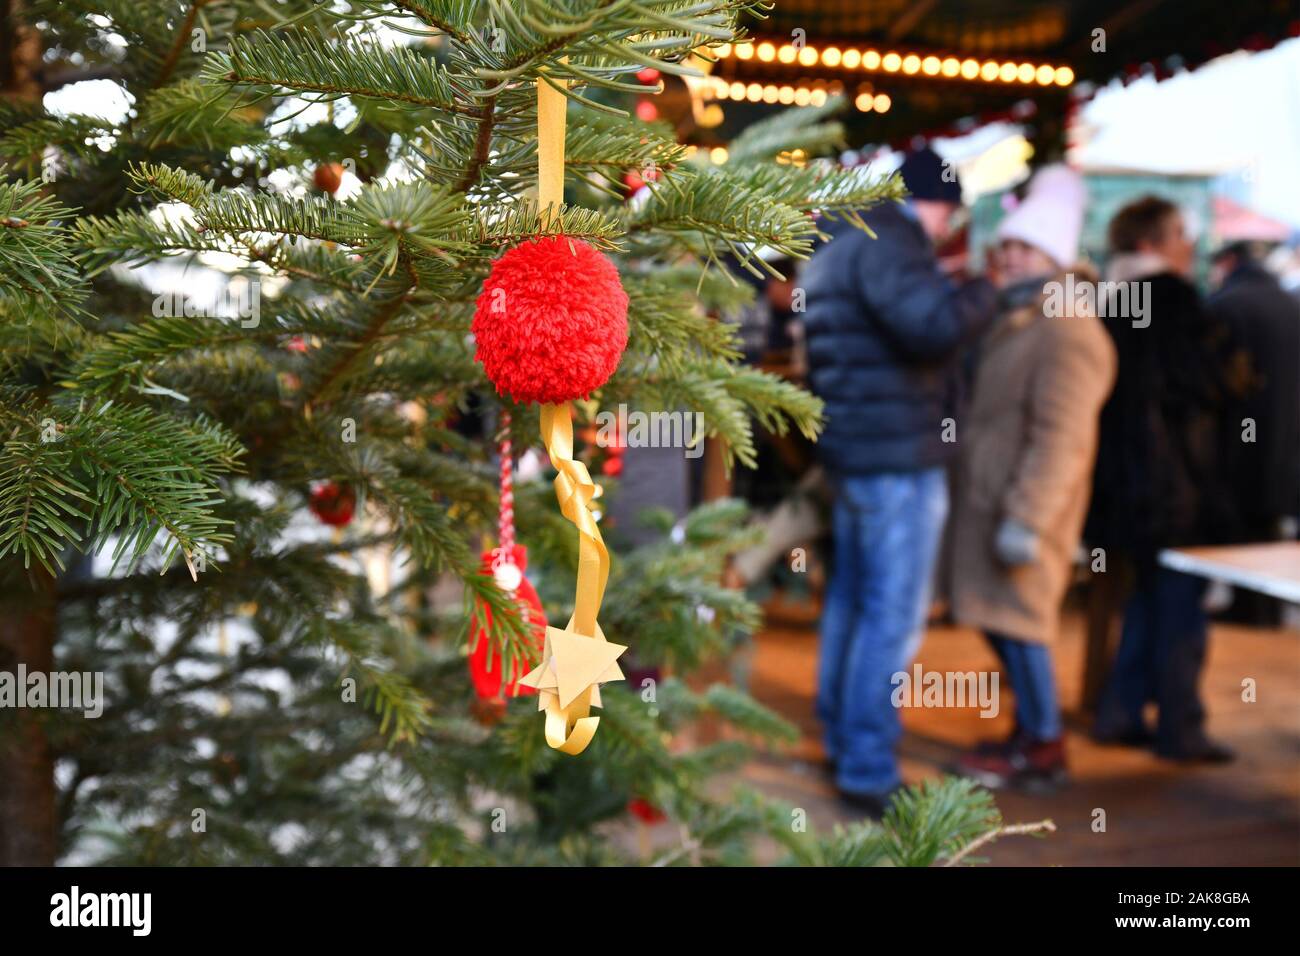 Rot Christbaumschmuck Christbaumkugel mit Verkaufsstand und Menschen in verschwommenen Hintergrund auf traditionellen Deutschen Weihnachtsmarkt Stockfoto